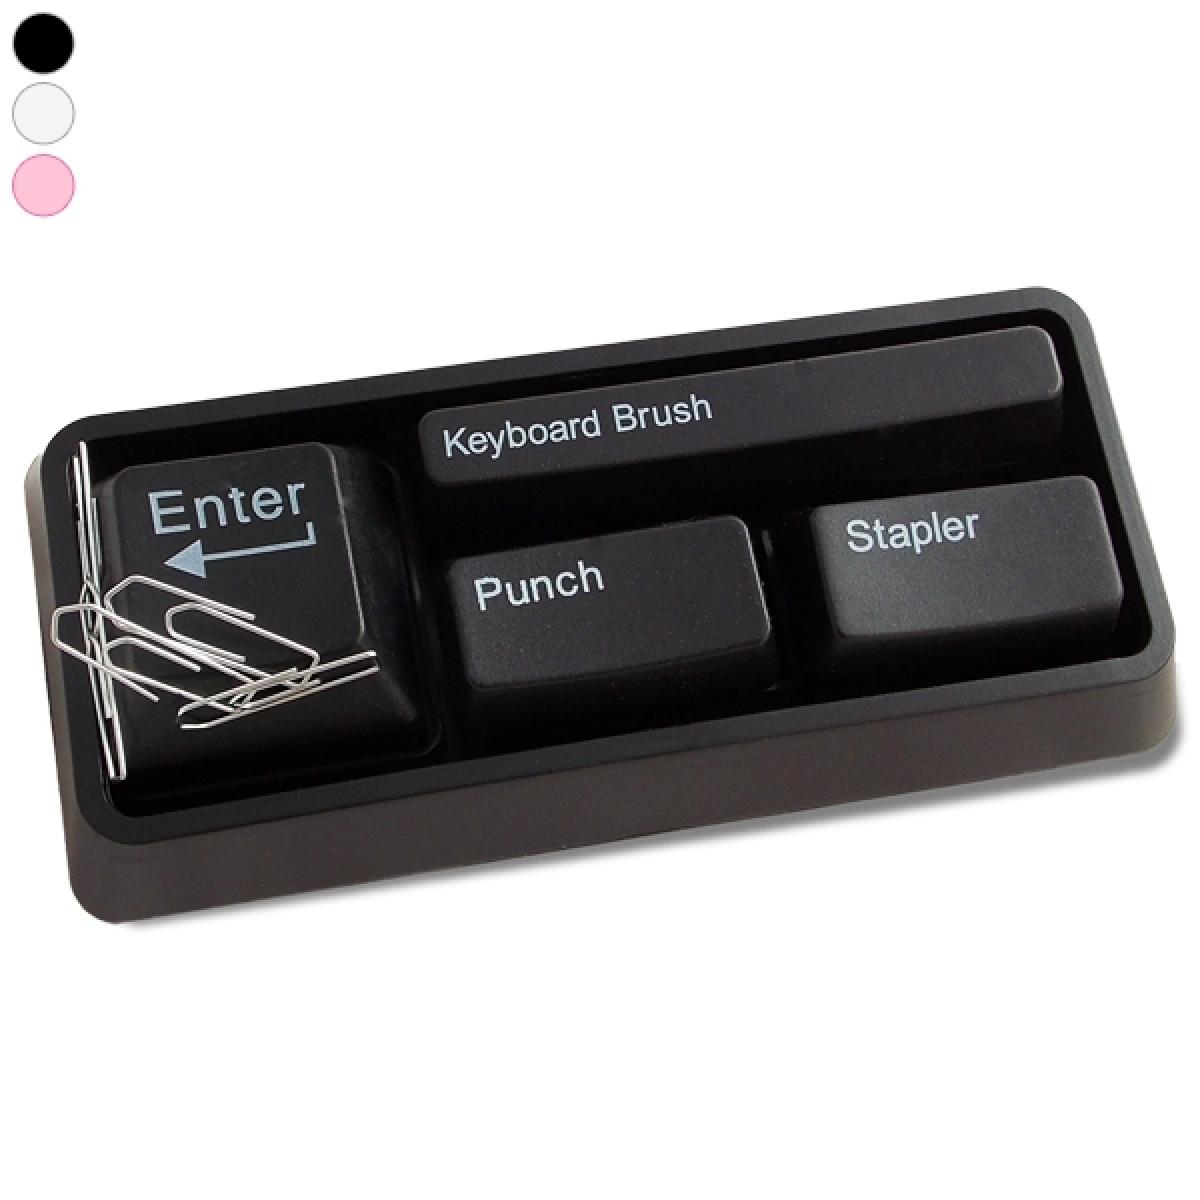 Totalcadeau - Kit accessoires bureau clavier : brossette, perforatrice, agrafeuse blanc - Jeux d'adresse